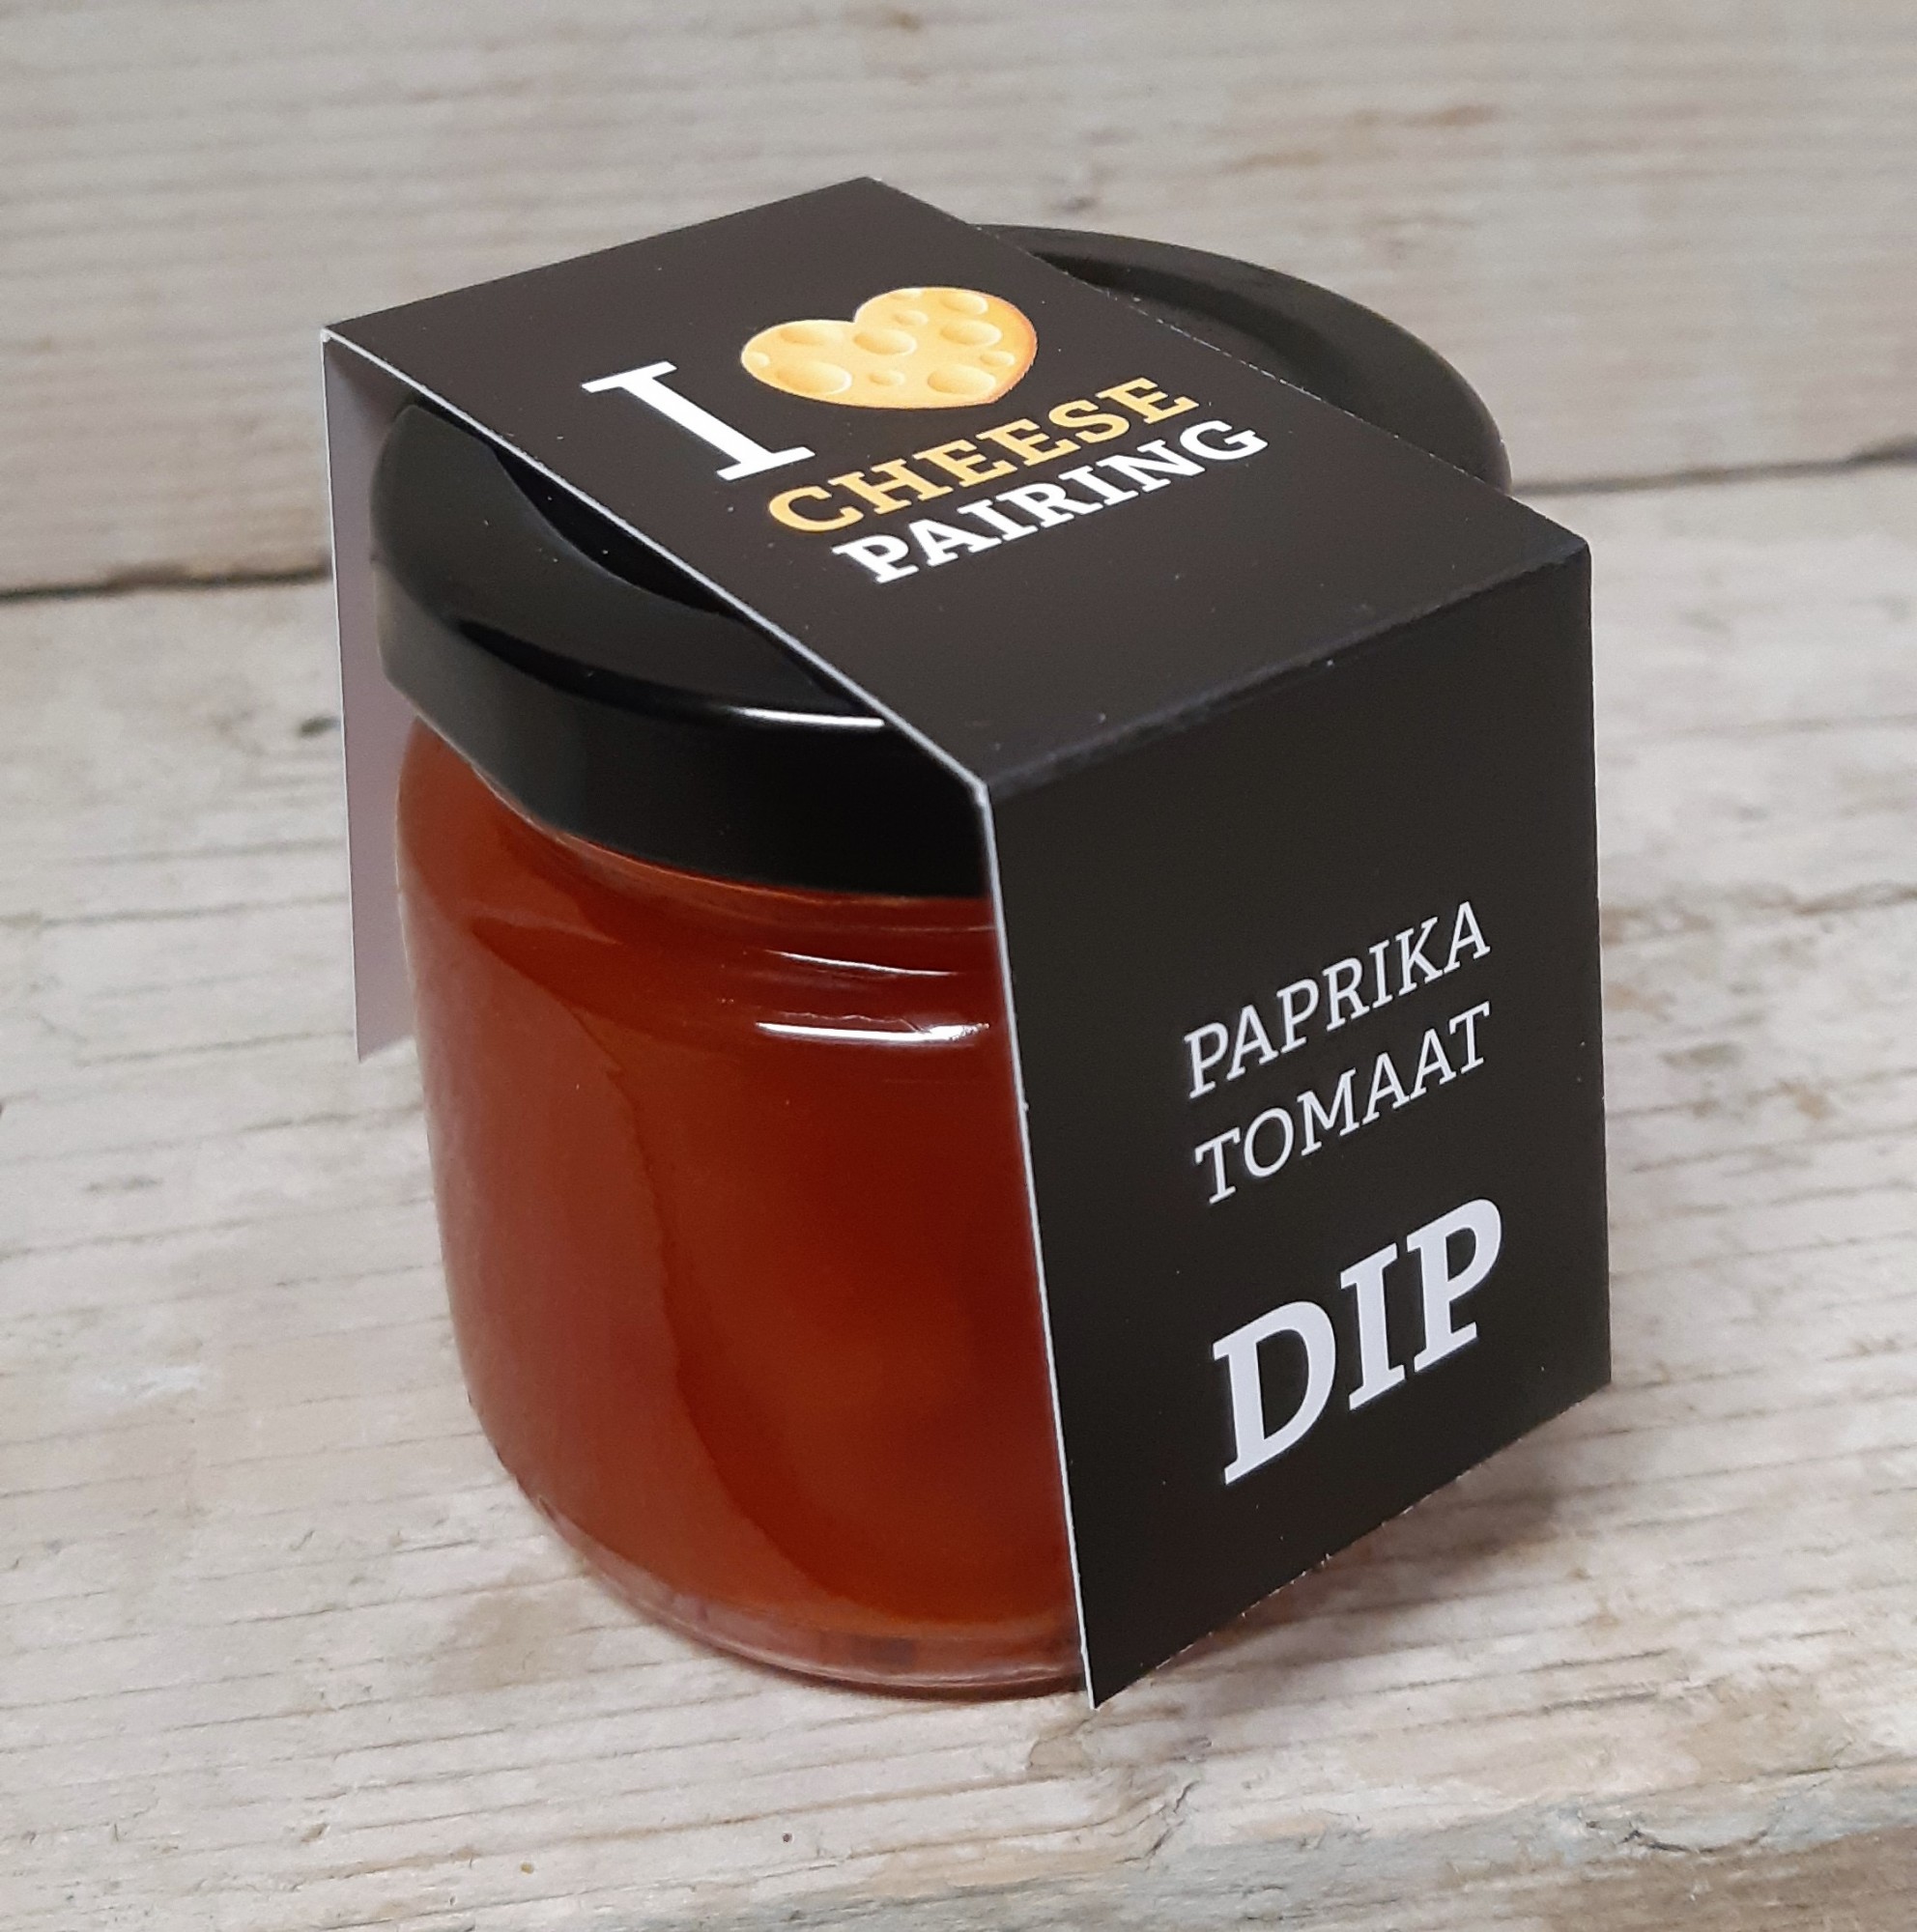 I Love Cheese pairing  DIP Paprika - Tomaat